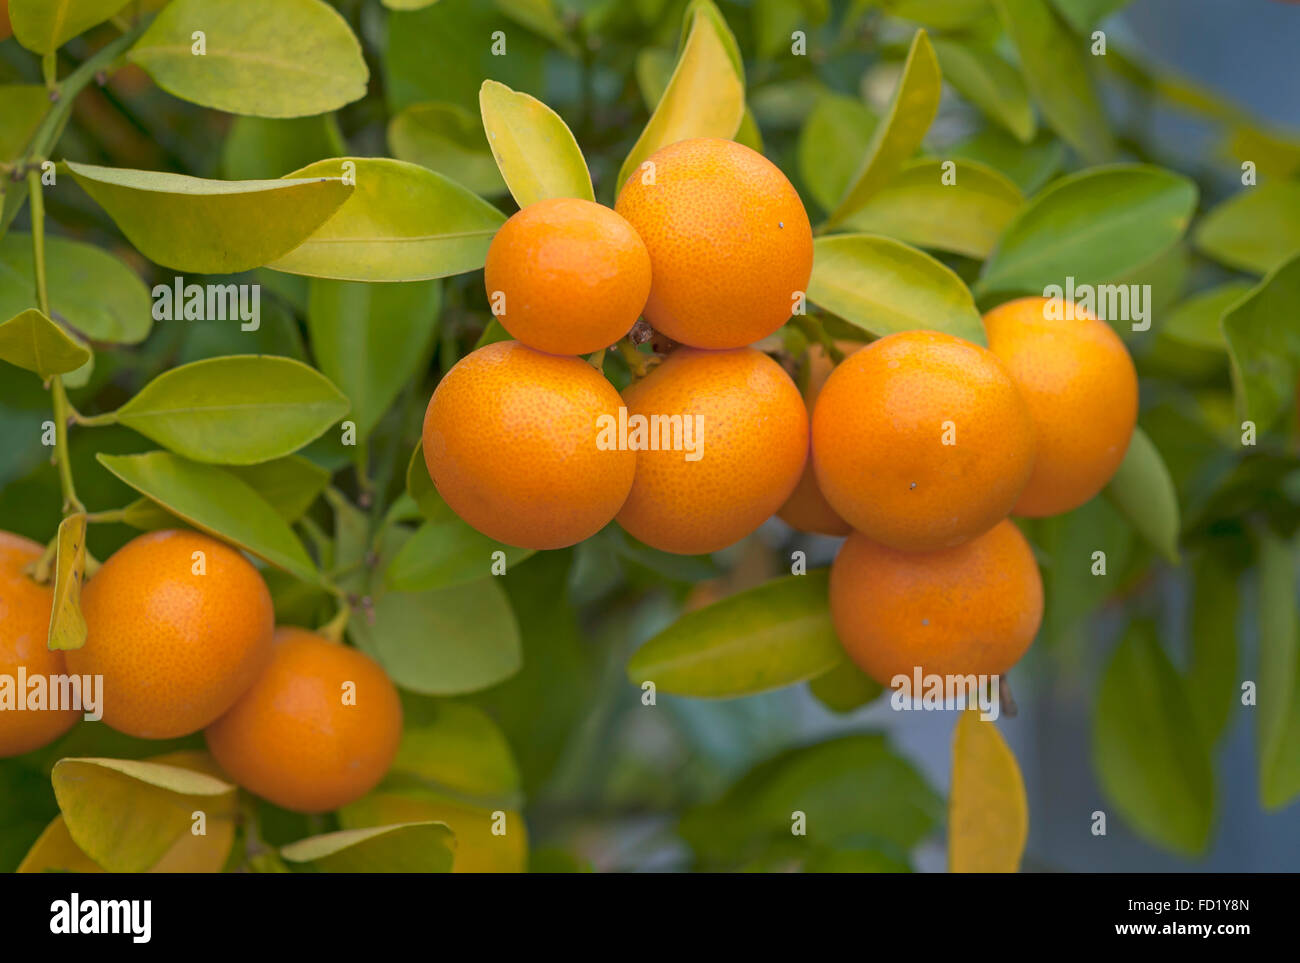 Calamondin (Citrus mitis) fruits on tree Stock Photo